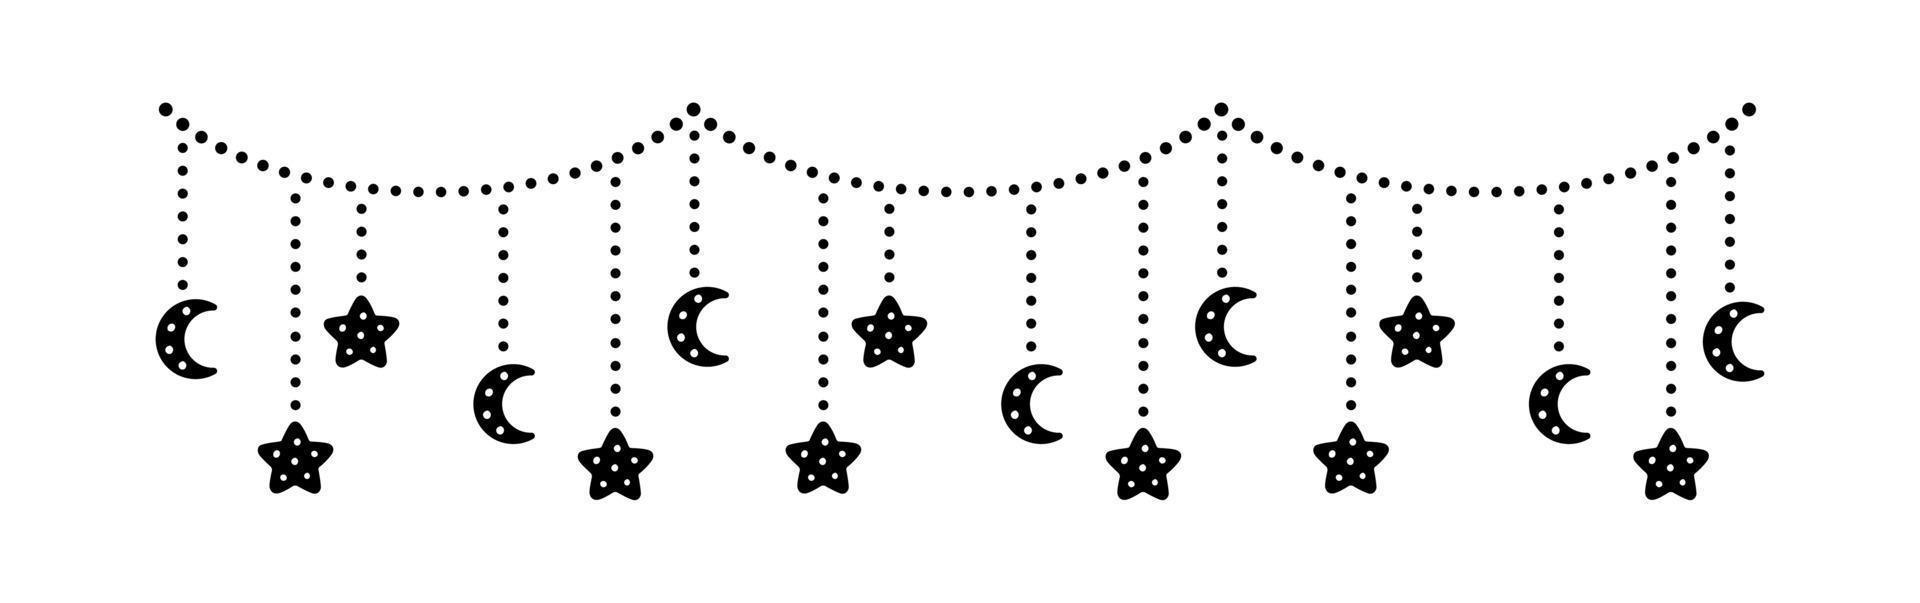 la lune et les étoiles s'allument en silhouette de guirlande de banderoles vecteur